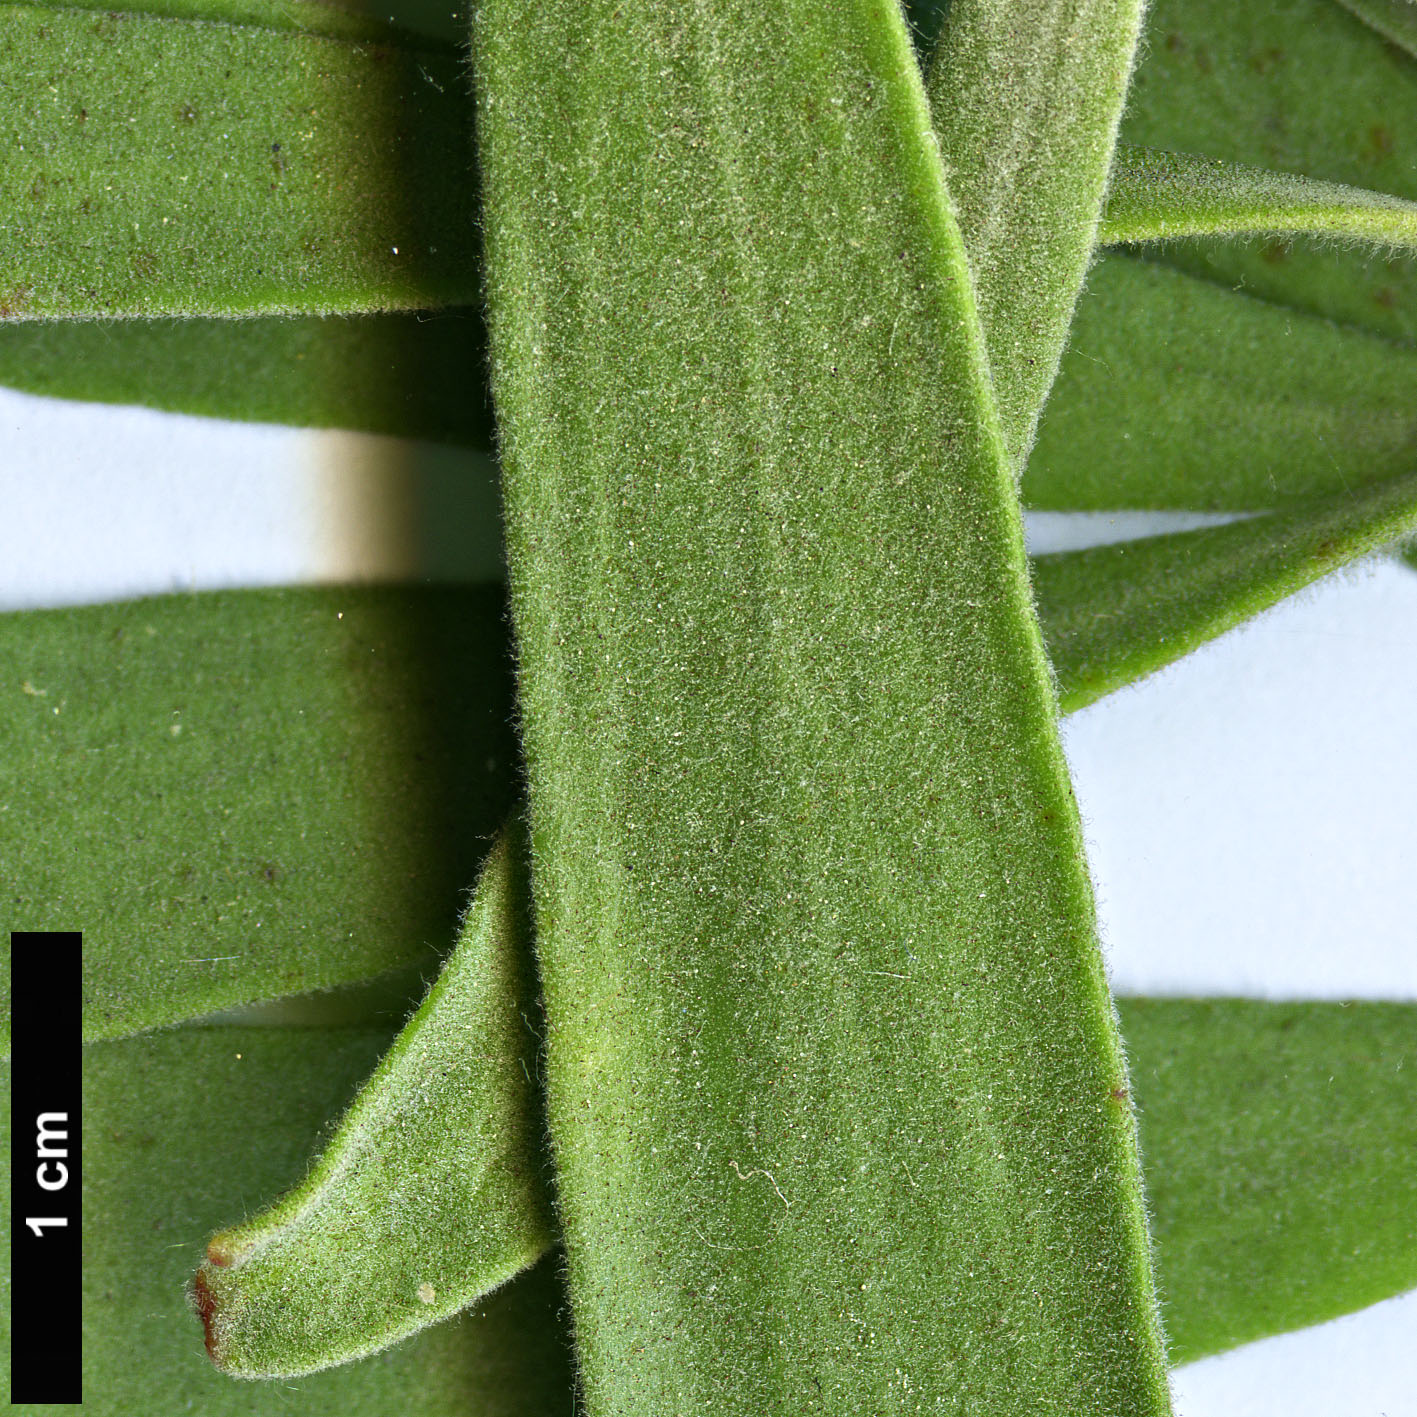 High resolution image: Family: Proteaceae - Genus: Leucospermum - Taxon: erubescens